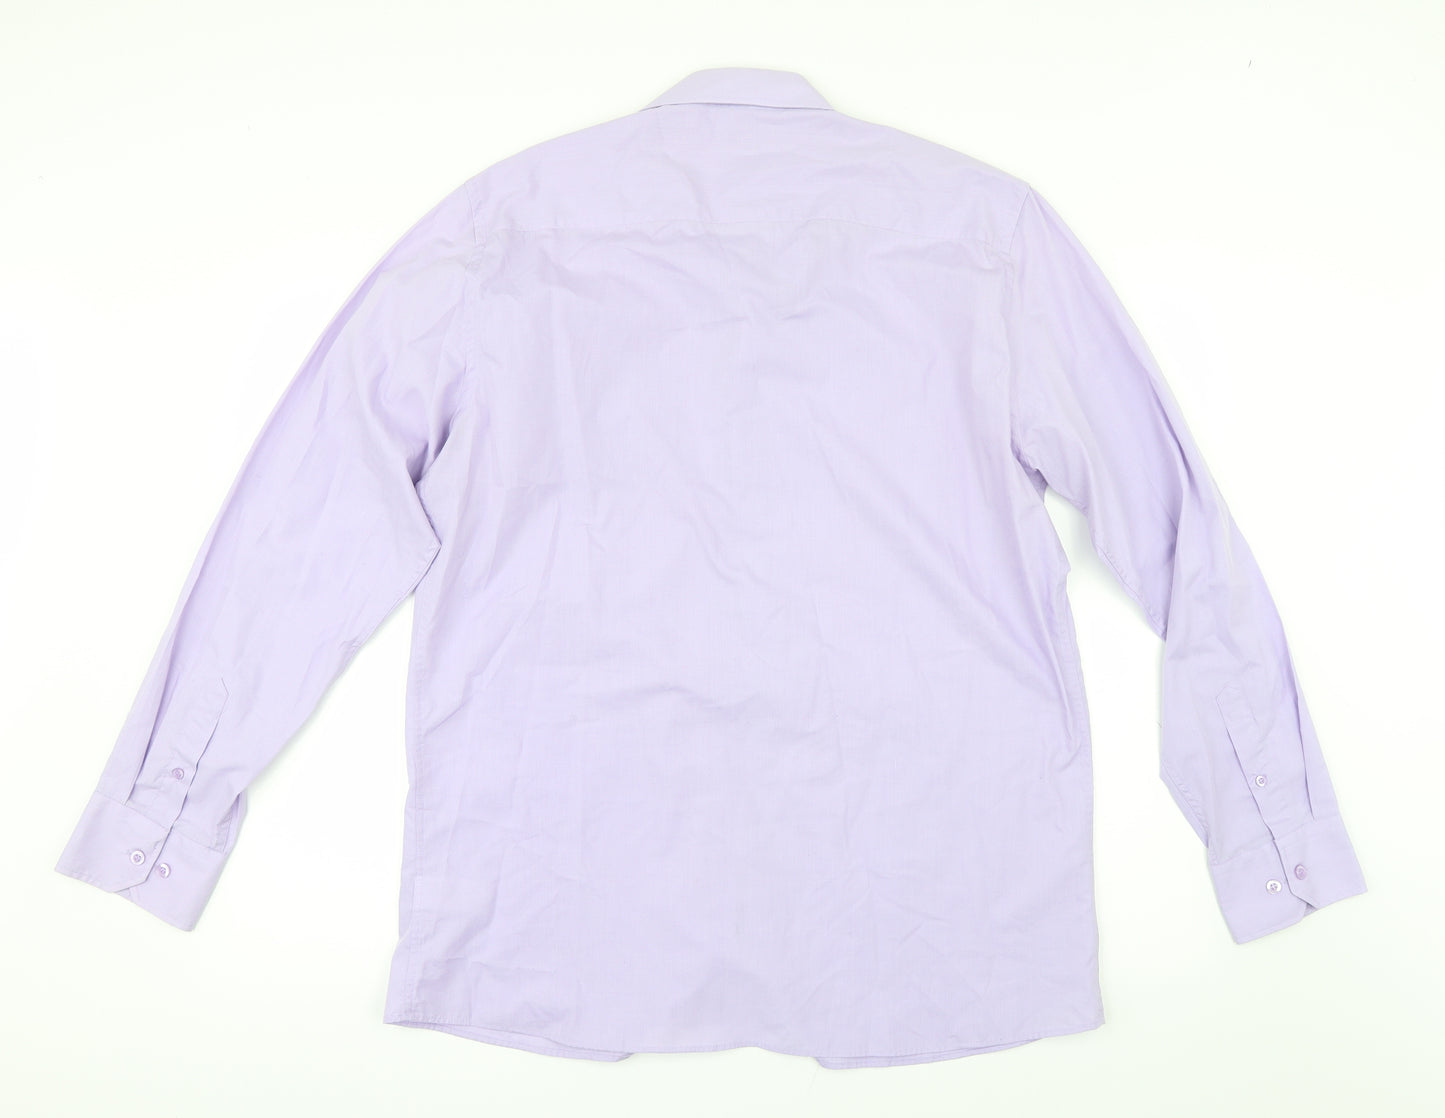 F&F Mens Purple    Dress Shirt Size 16